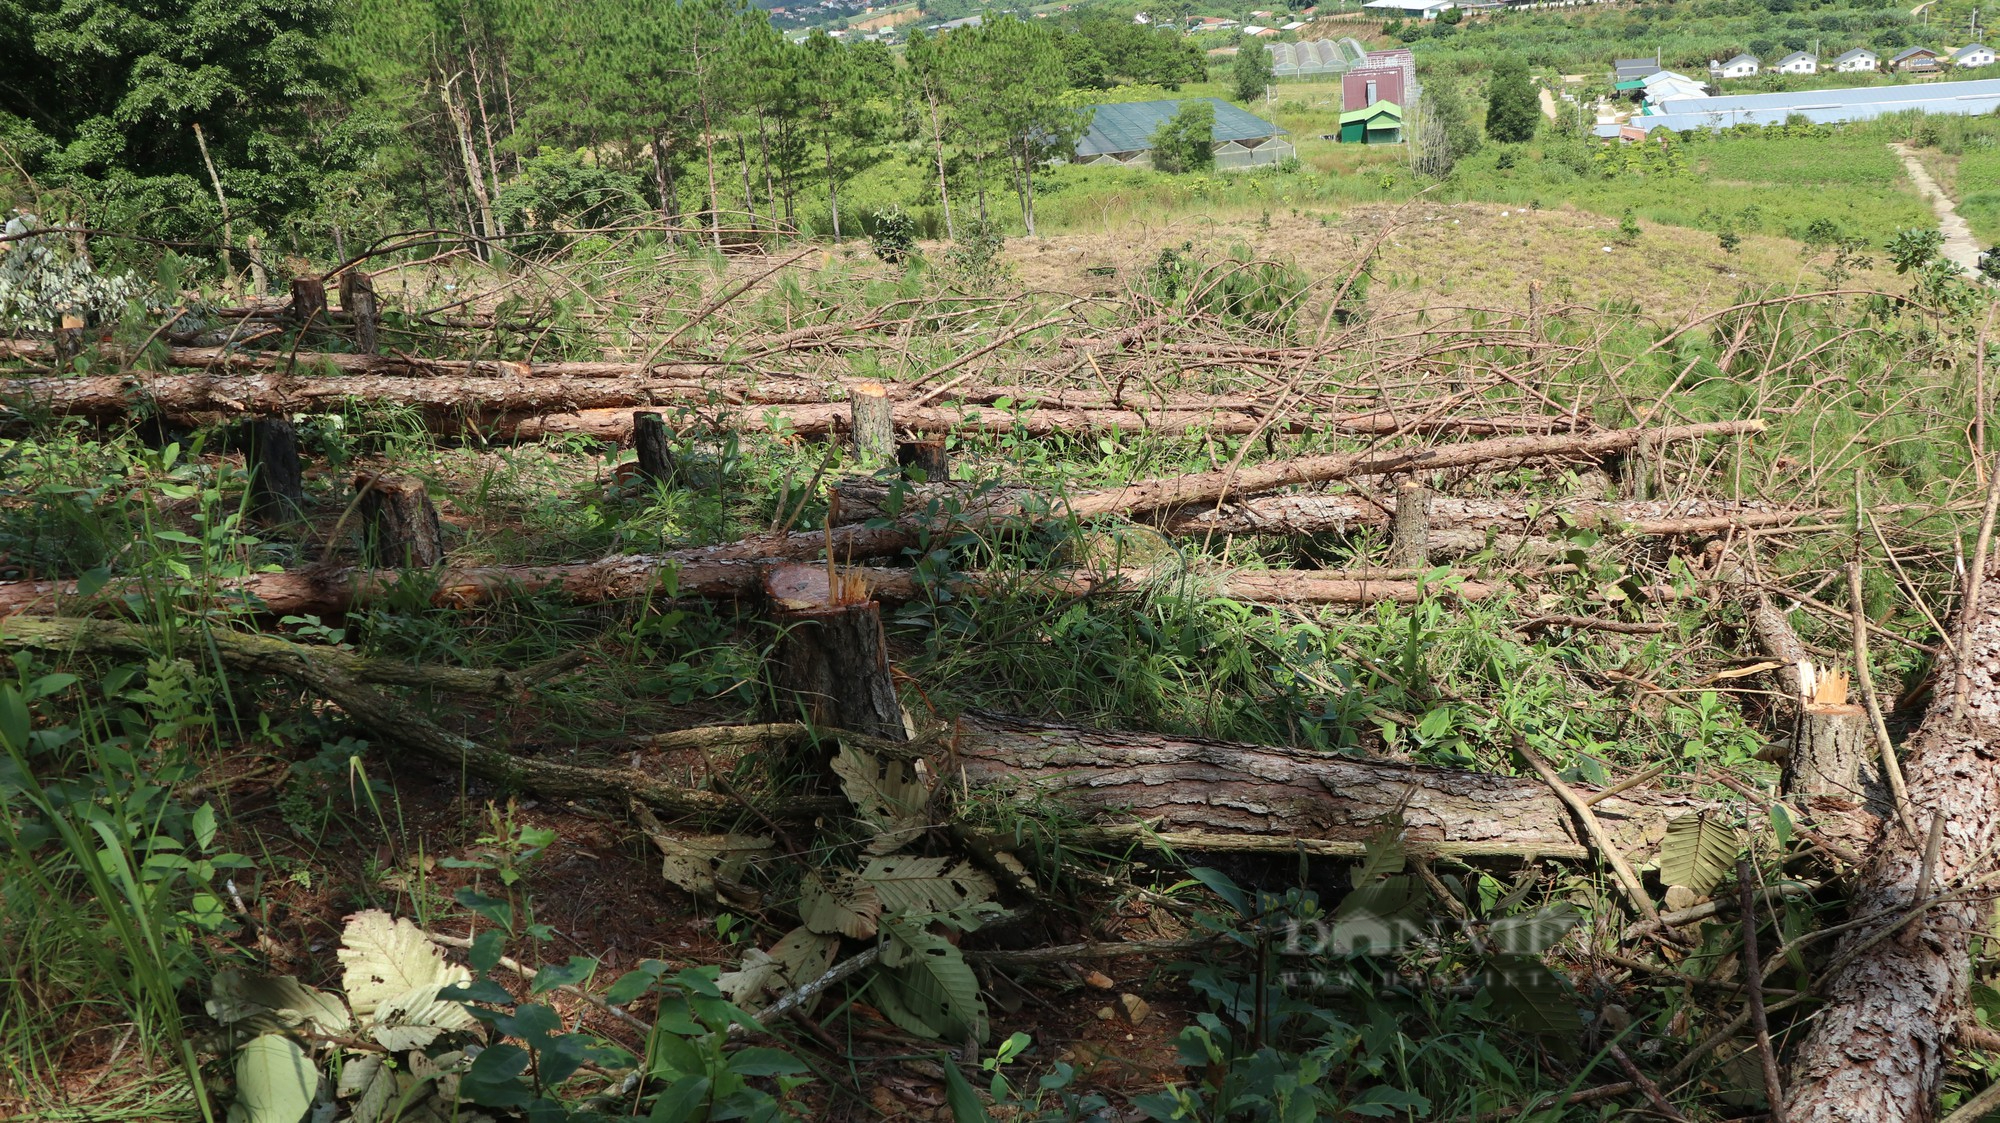 Phá rừng thông ở Lâm Đồng: Hàng trăm cây thông 3 lá nằm la liệt, huyện hỏa tốc chỉ đạo xử lý - Ảnh 4.